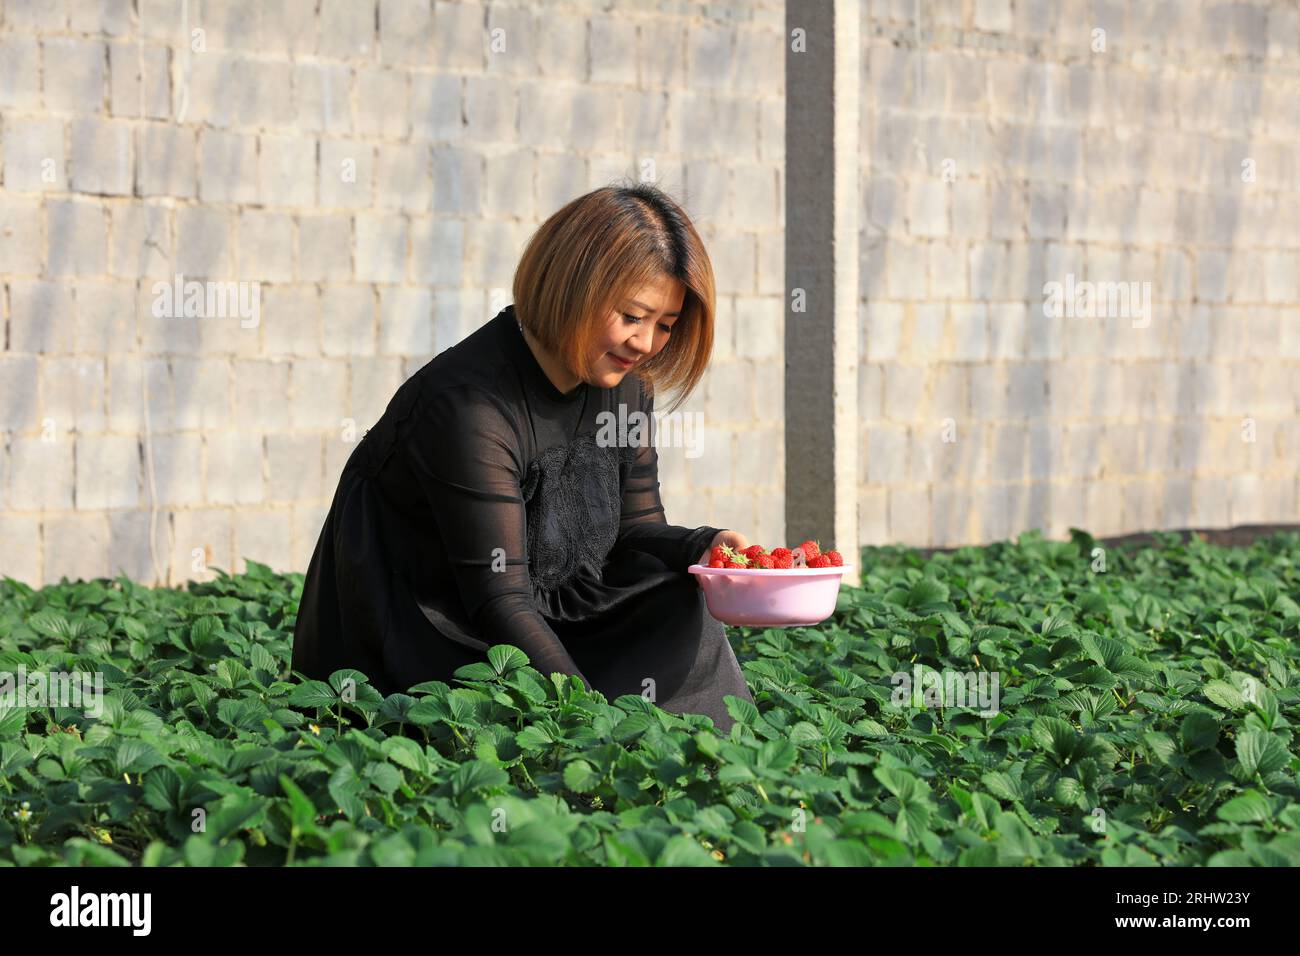 Comté de Luannan - 23 janvier 2019 : les travailleurs ramassent des fraises à la ferme, comté de Luannan, province du Hebei, Chine Banque D'Images